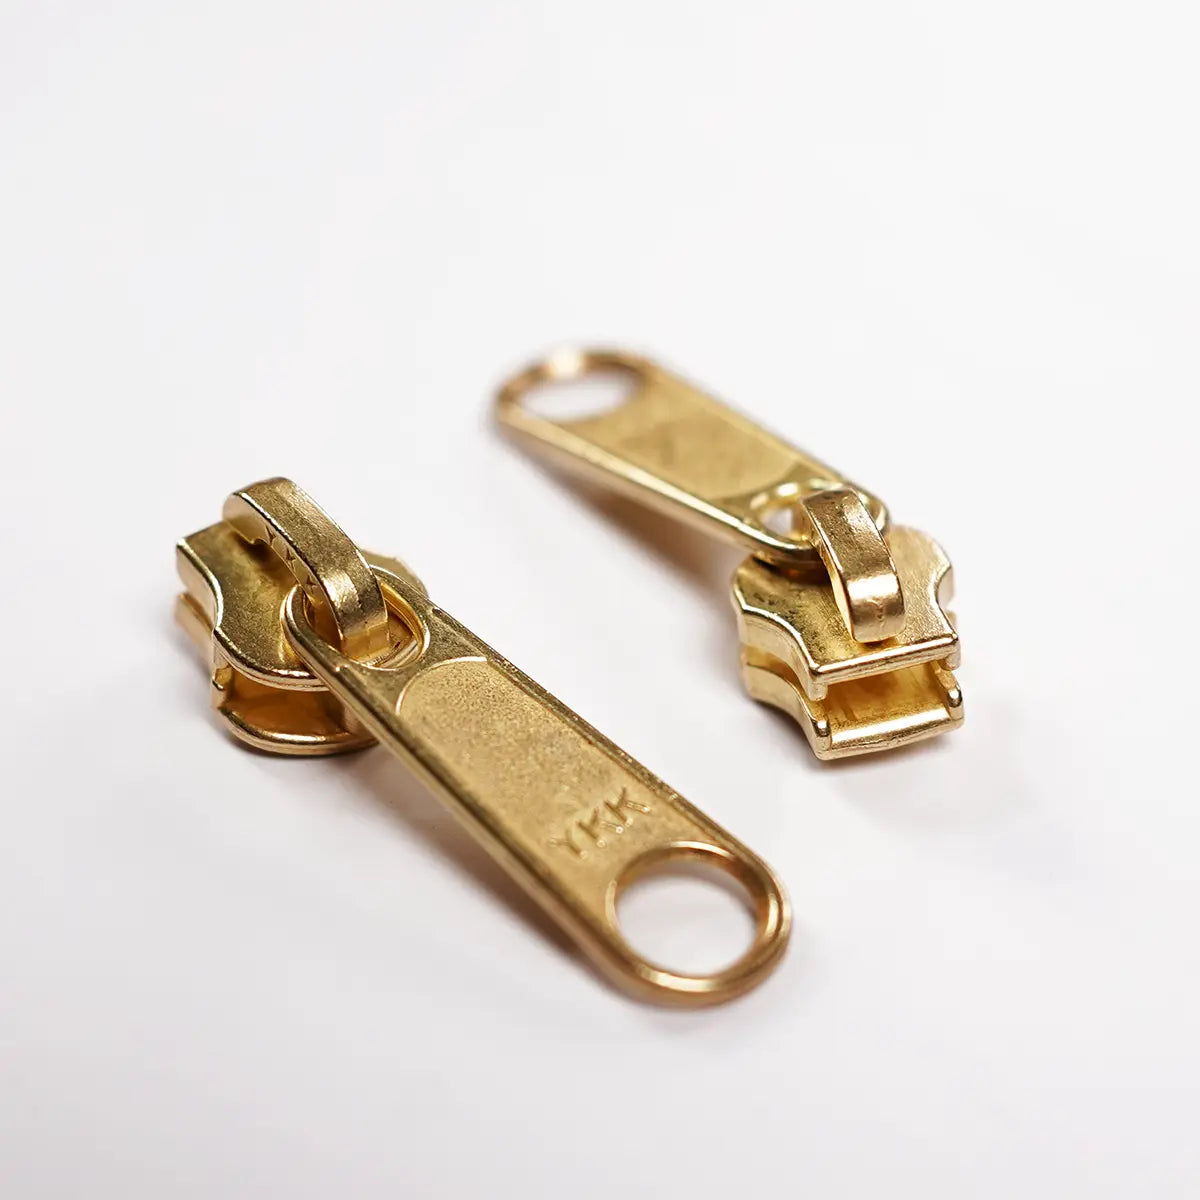 YKK 4.5 Brass Zipper Purse Slider Pull 2 Pack